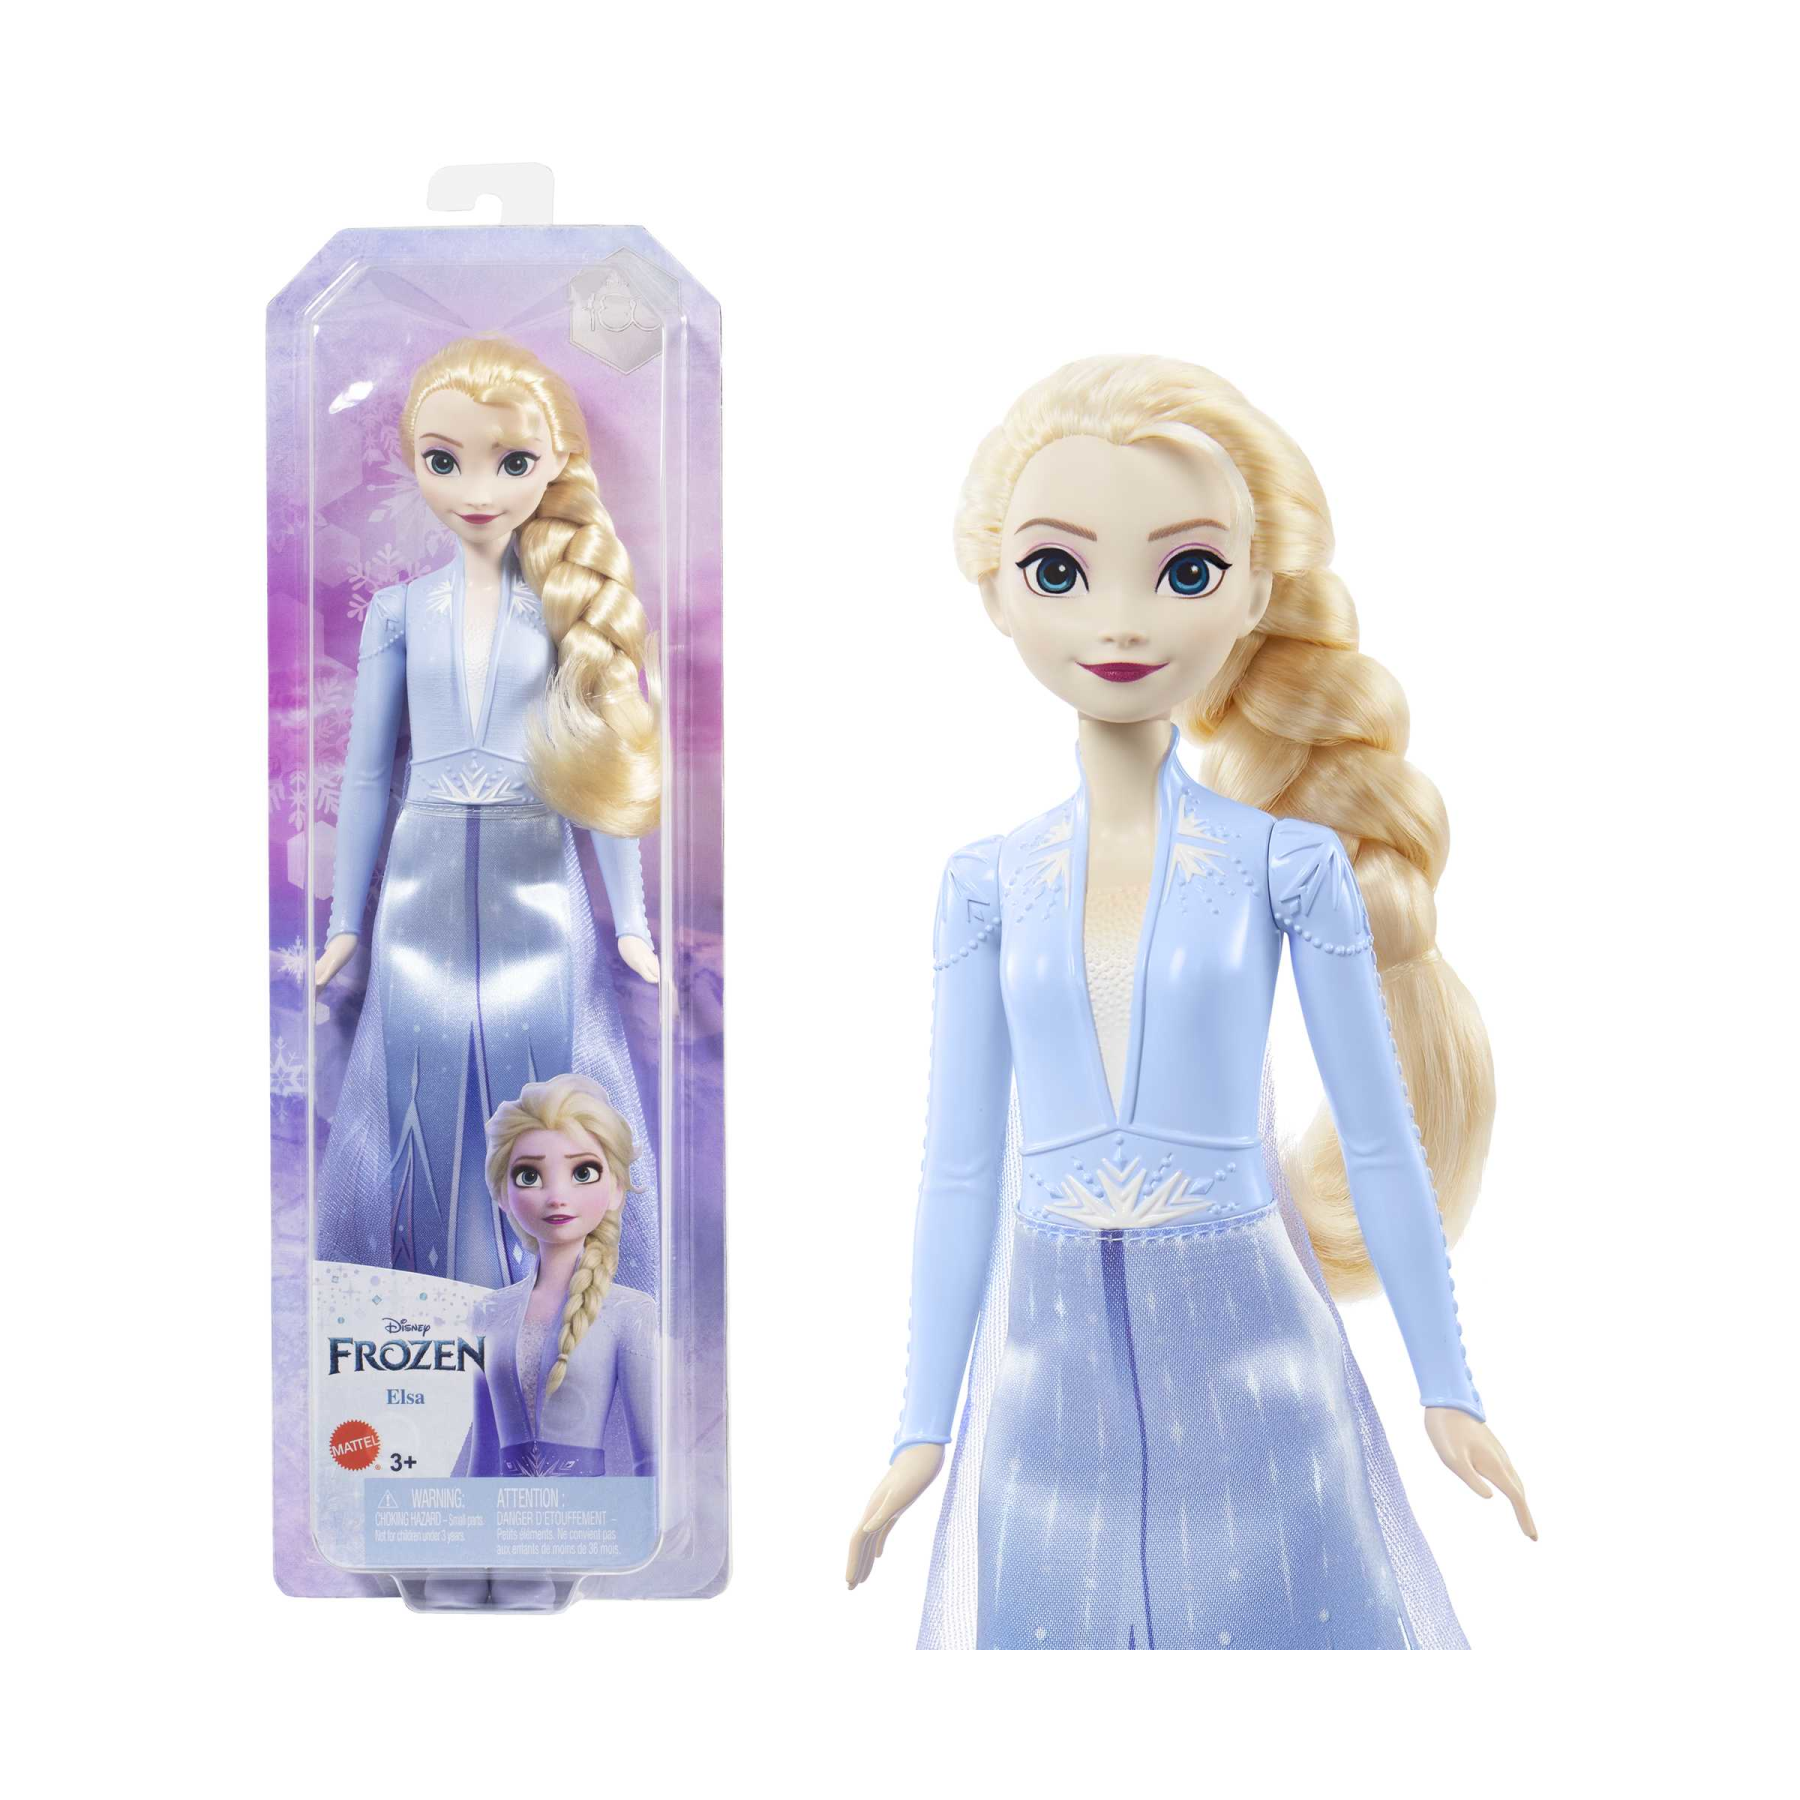 Disney frozen - elsa bambola con abito esclusivo e accessori ispirati ai film disney frozen 2, giocattolo per bambini, 3+ anni, hlw48 - DISNEY PRINCESS, Frozen